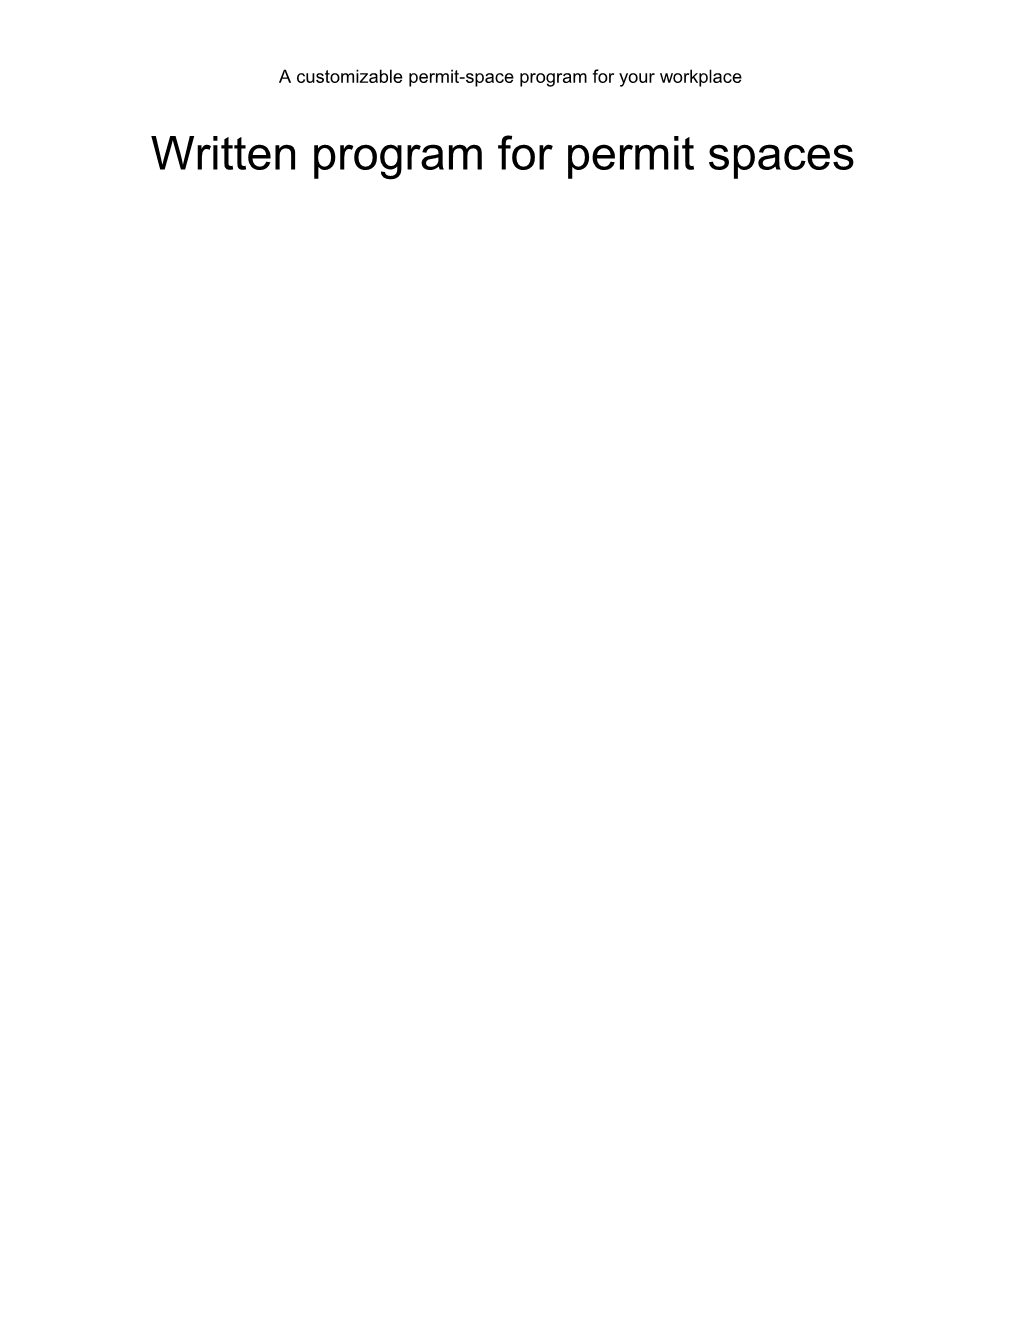 Permit Space Program